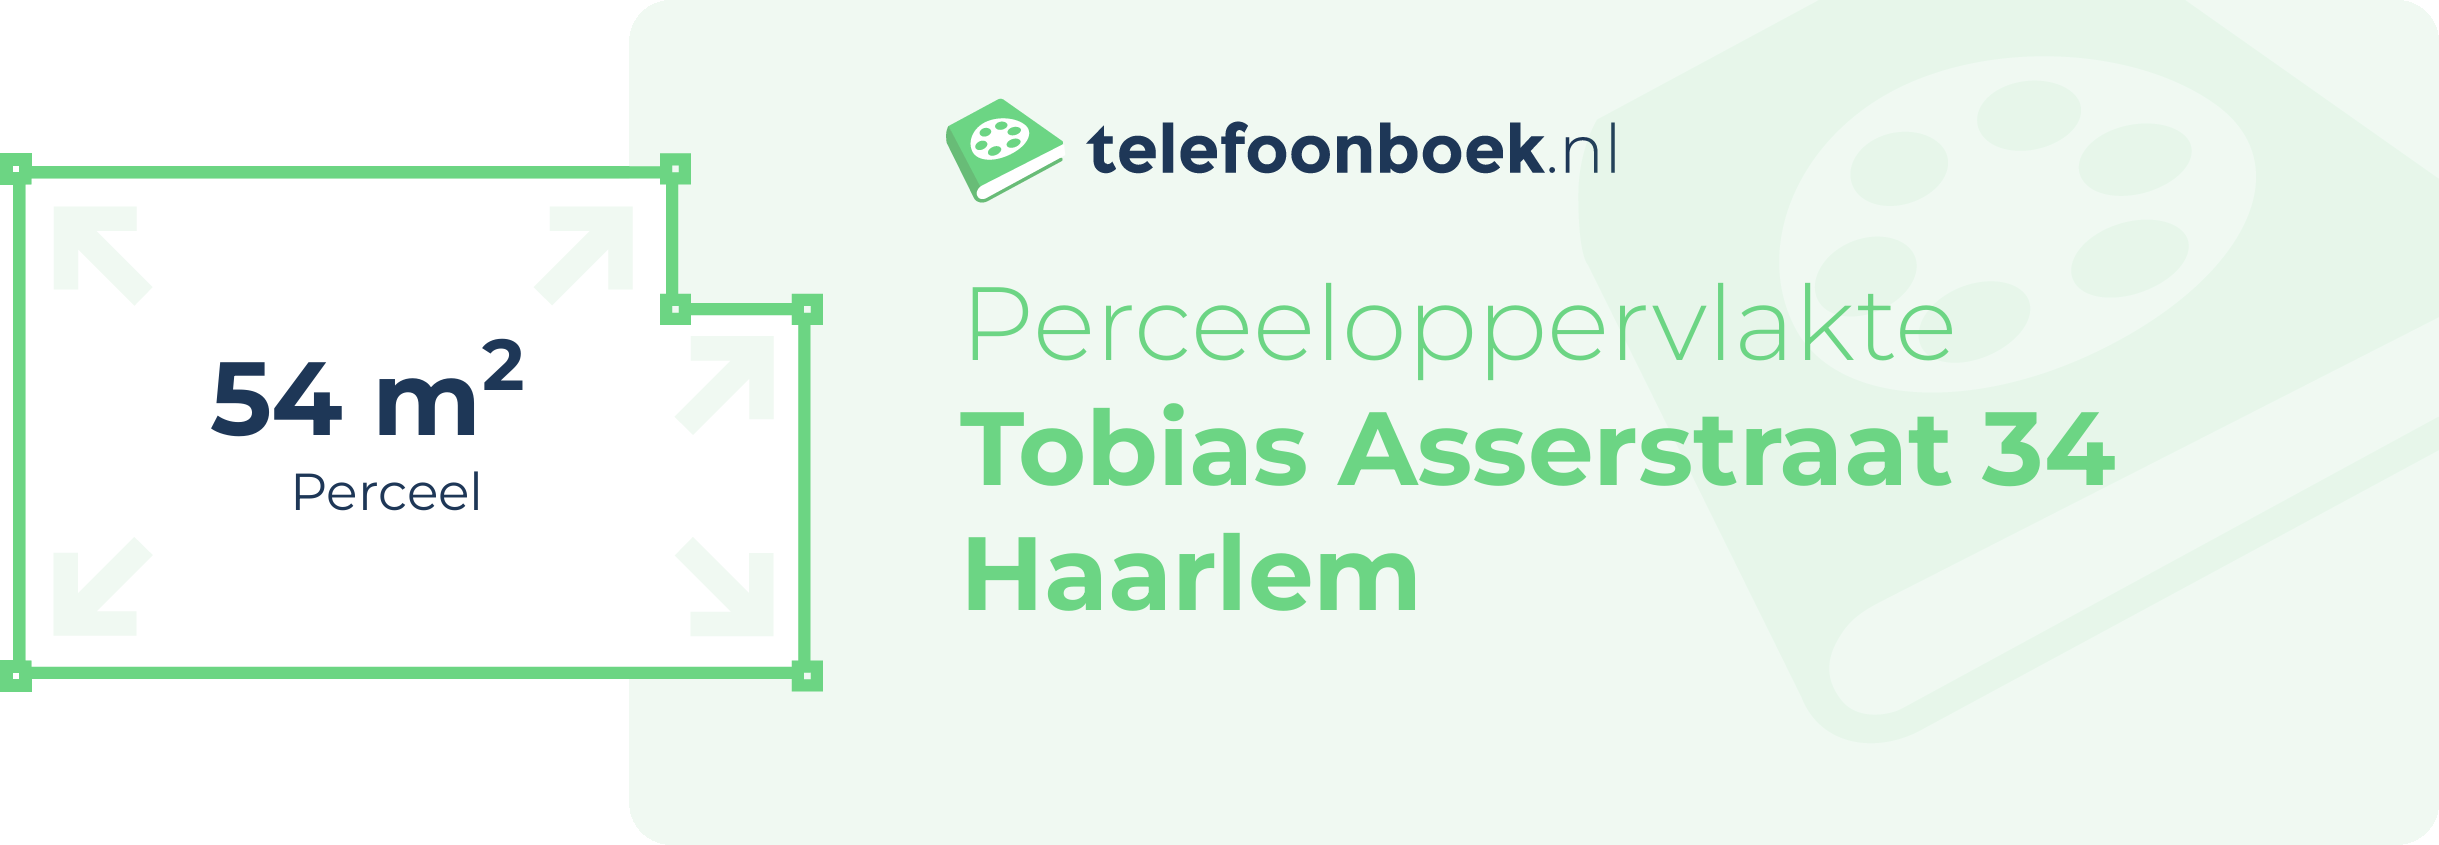 Perceeloppervlakte Tobias Asserstraat 34 Haarlem